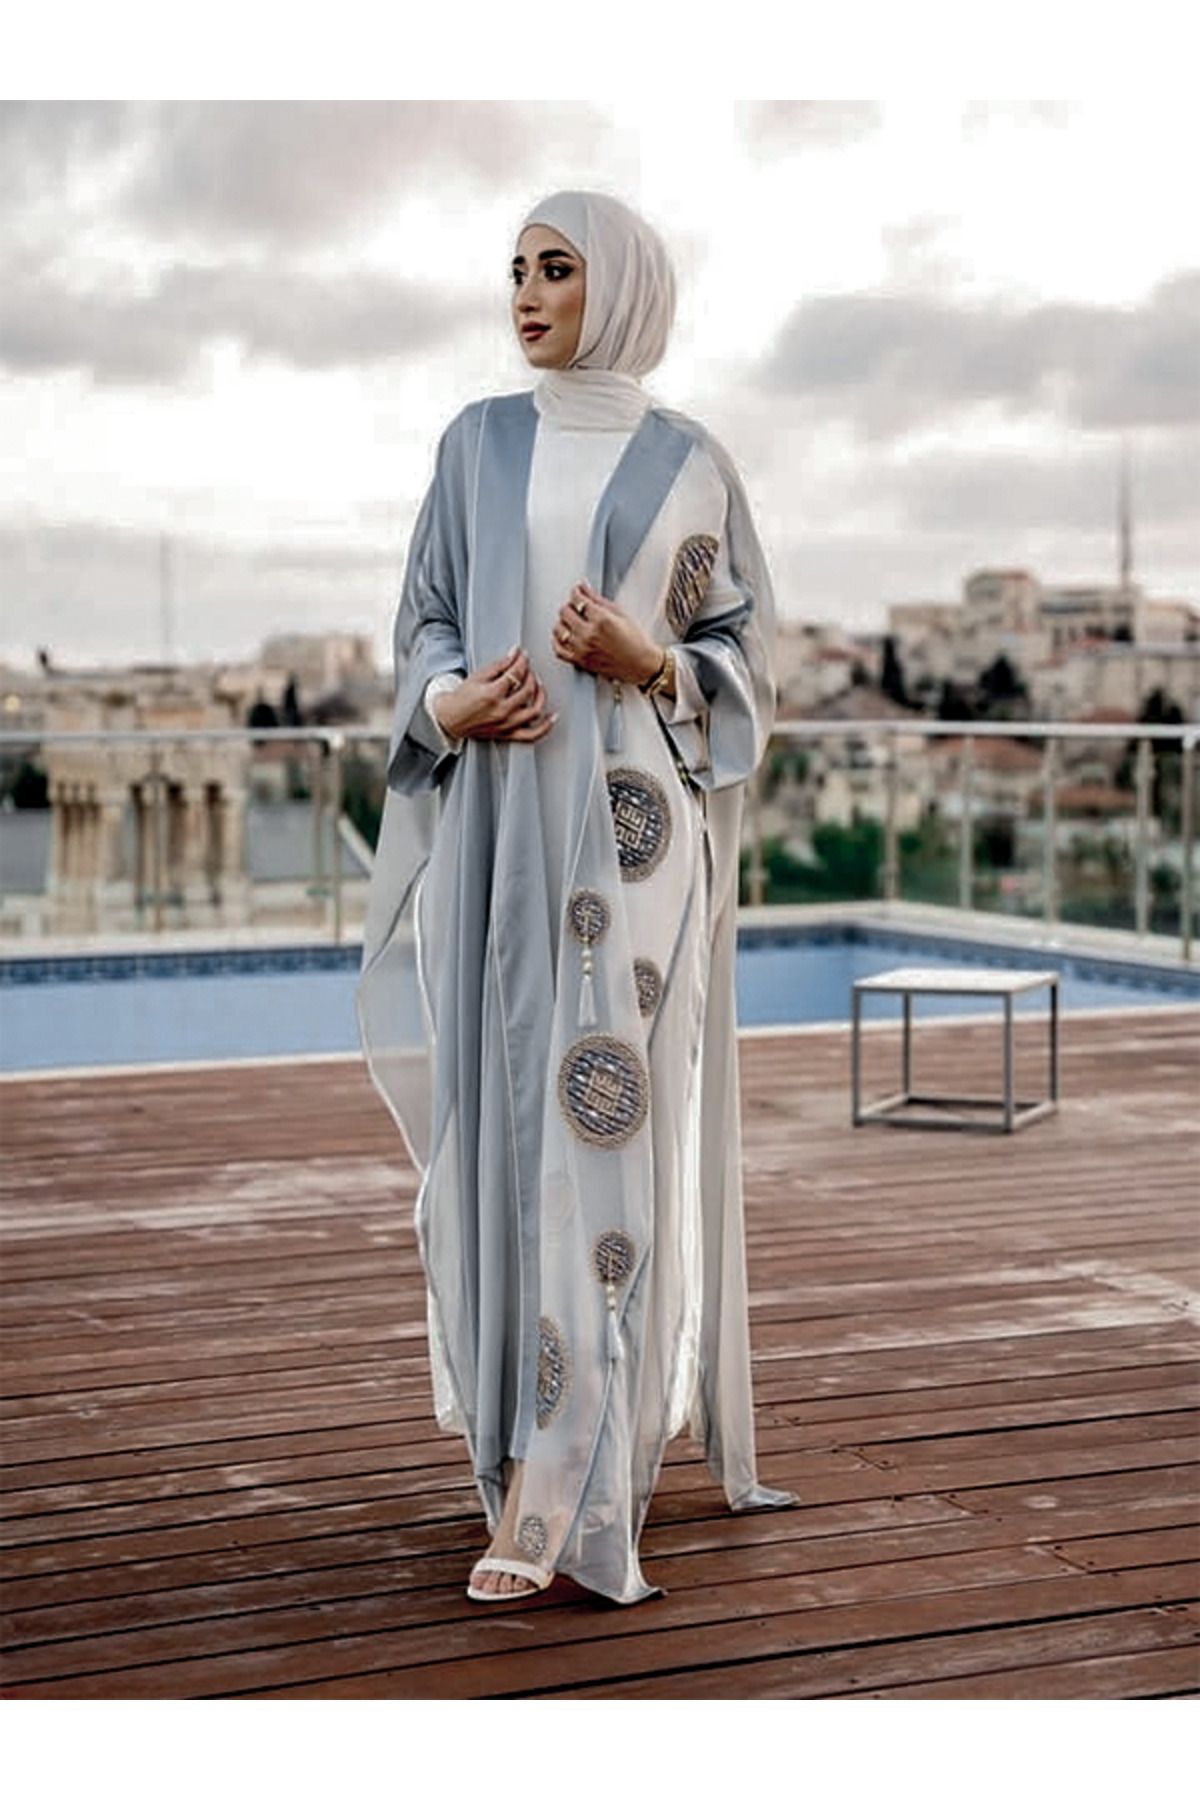 fiore fashion Gri Kaftan Abaya Müslüman Elbise Islam Ferace Abaya Bisht Daraa` Ince Kumaşı